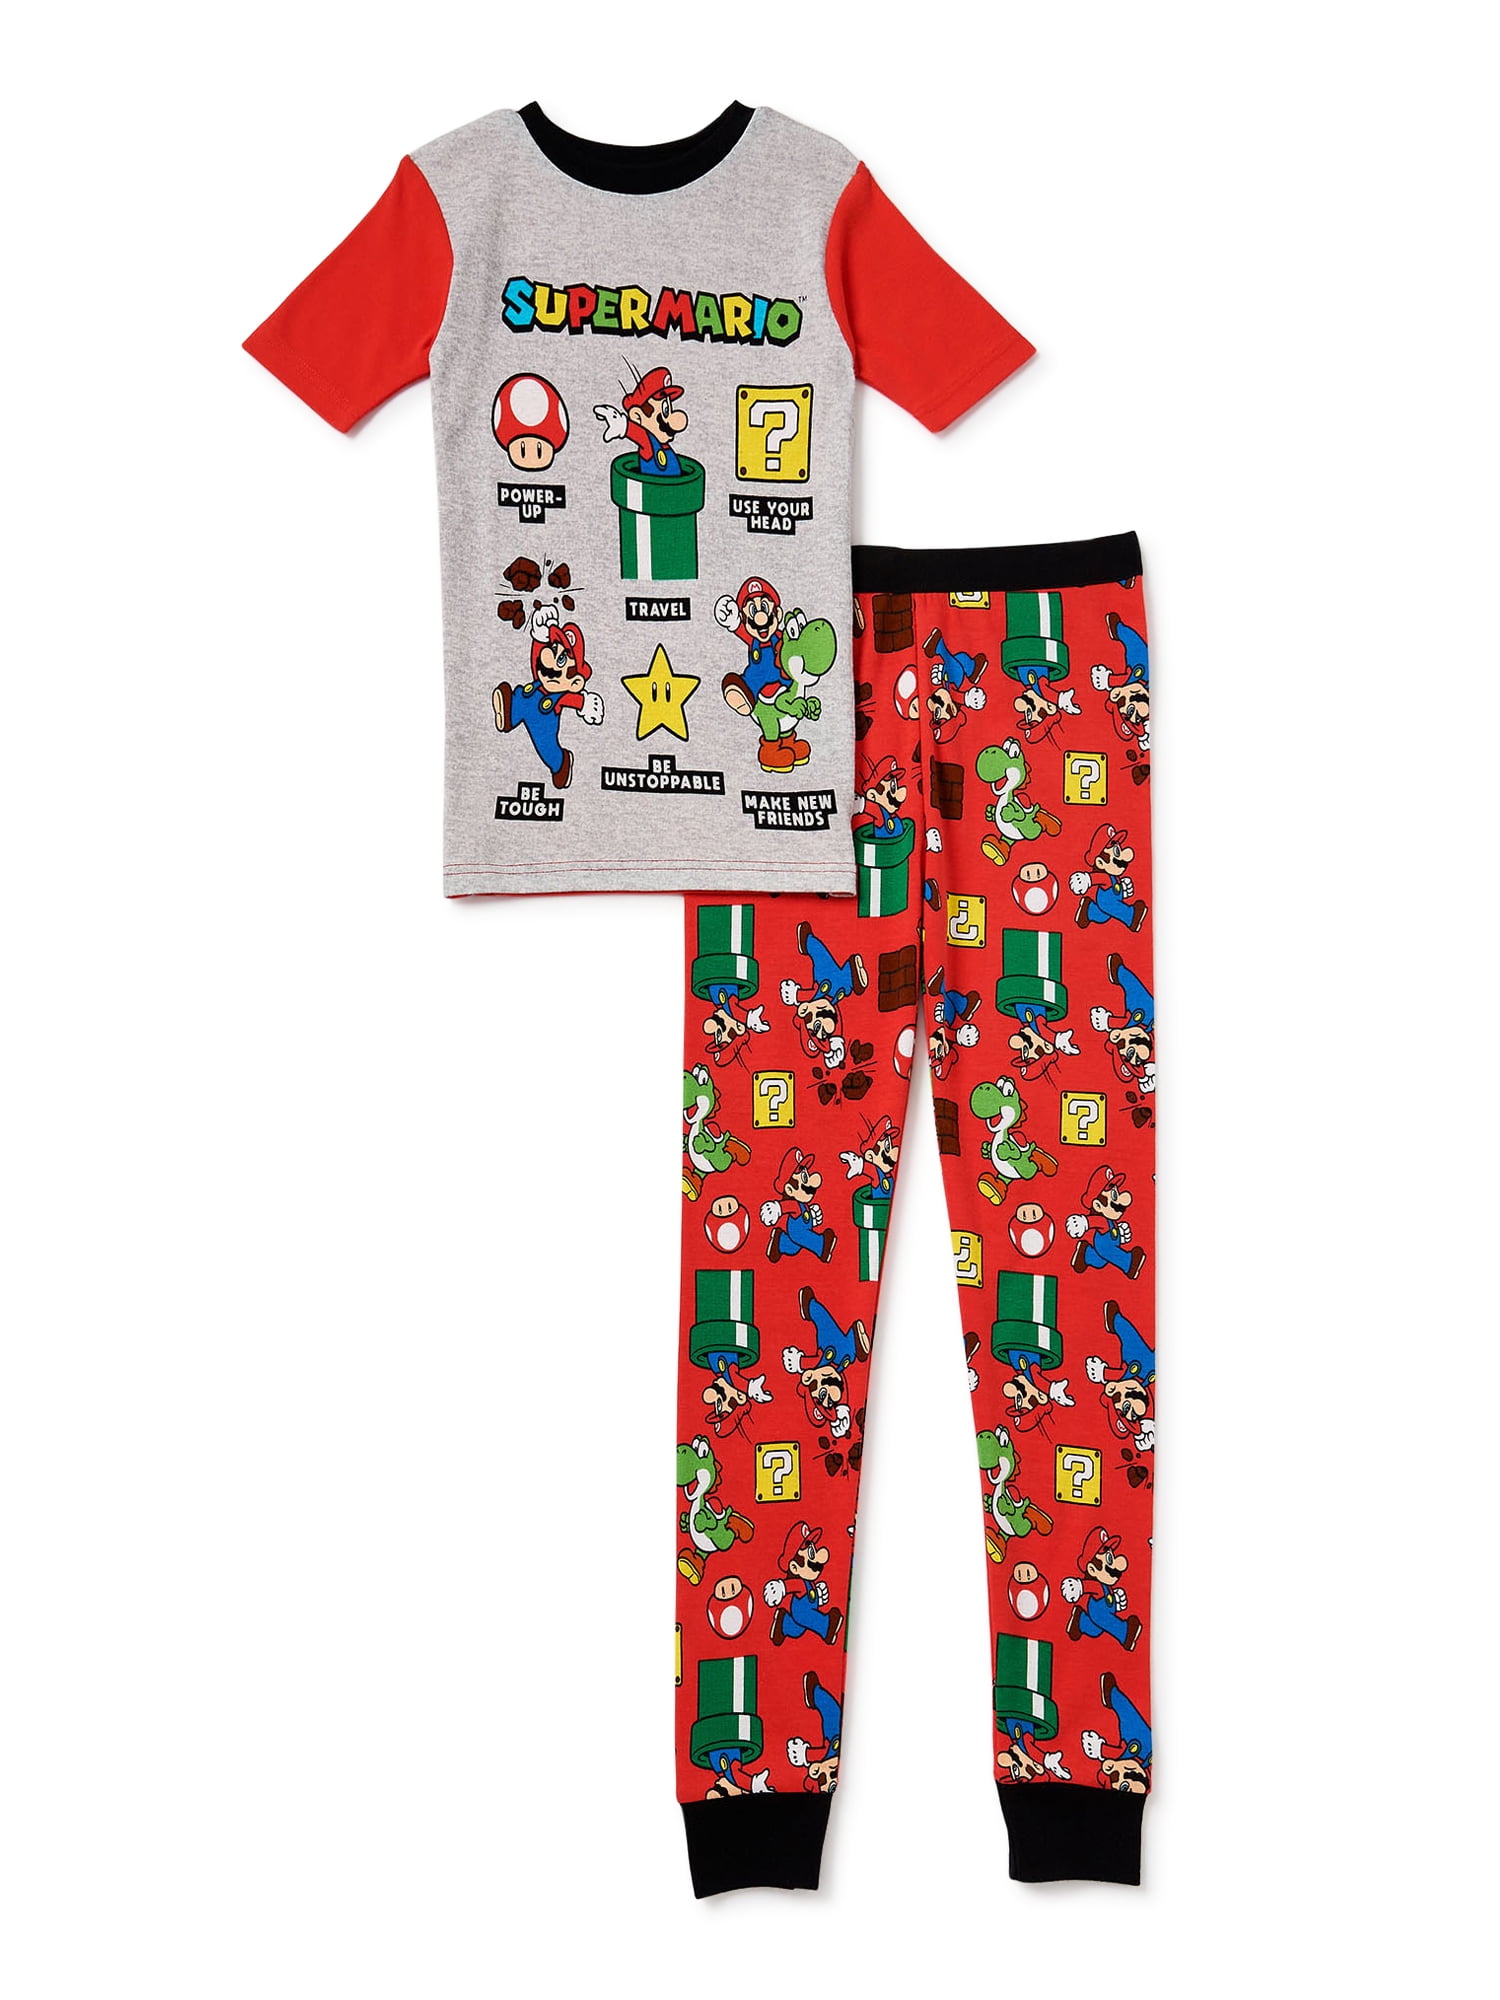 BNWT Super Mario boys kids Pyjamas 100% cotton tshirt top pajamas sleepwear new 